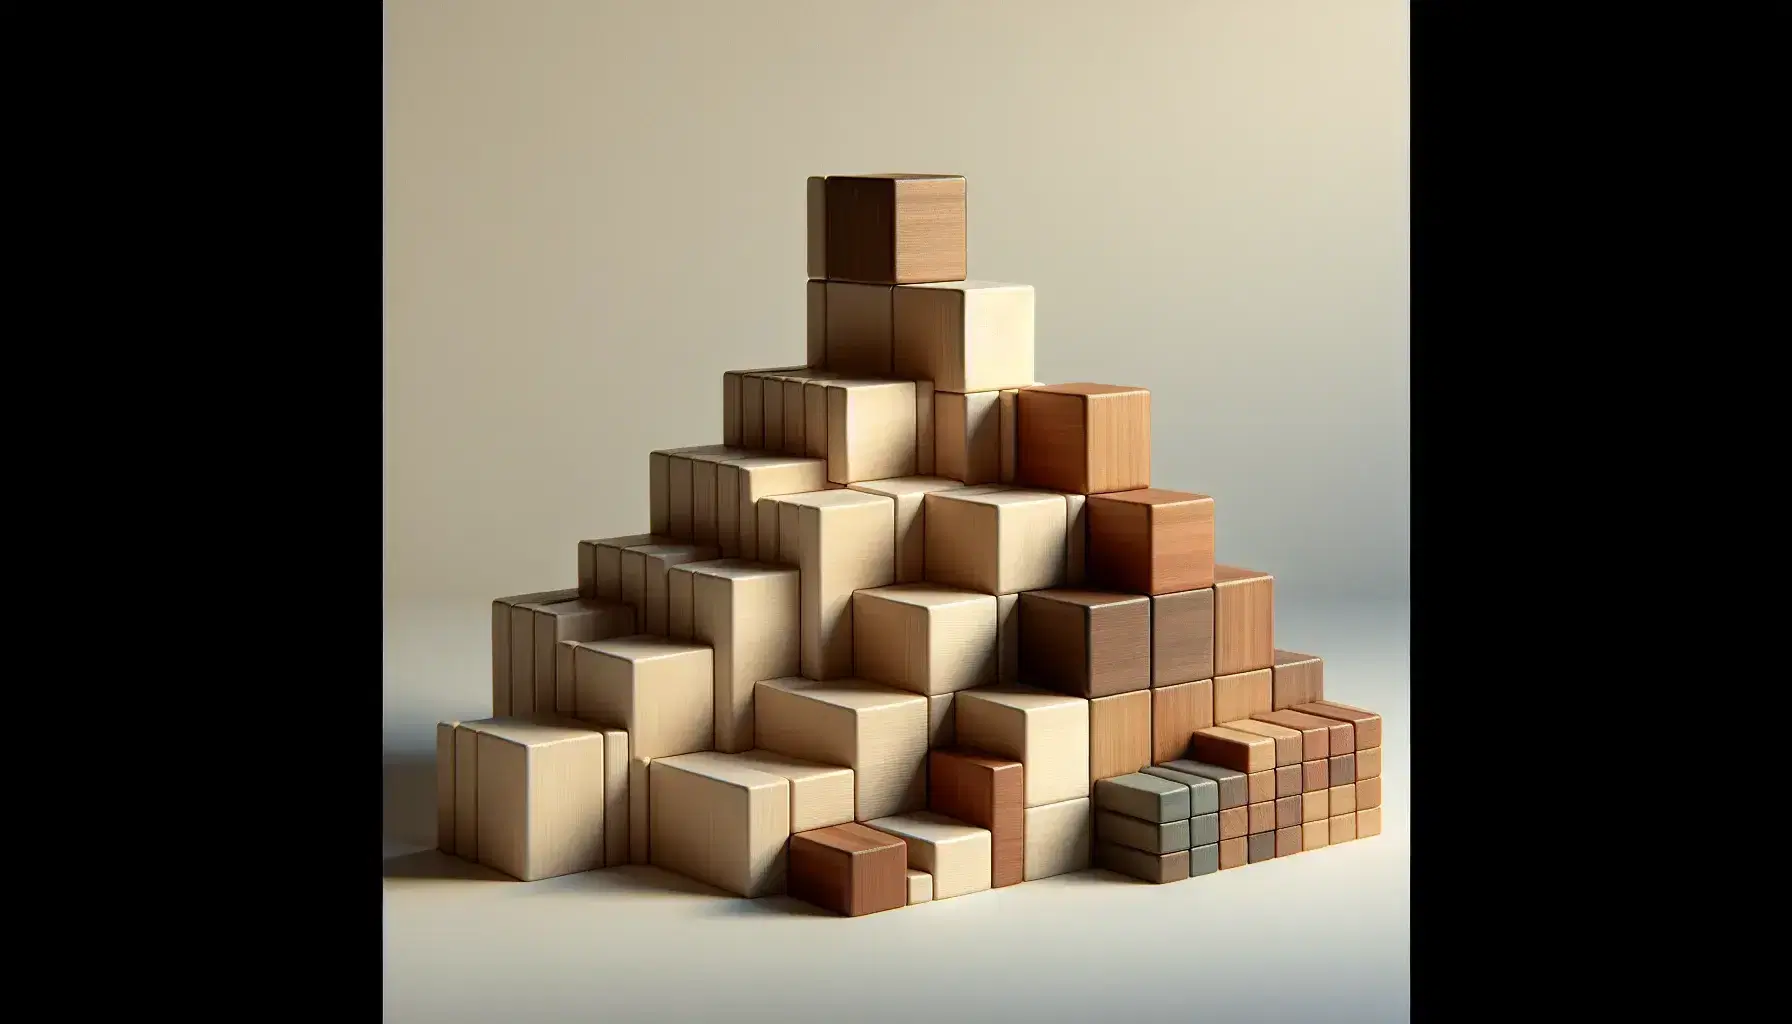 Pirámide escalonada de bloques de madera en tonos marrones ascendentes, desde grandes en la base hasta el más pequeño en la cima, sobre superficie blanca.